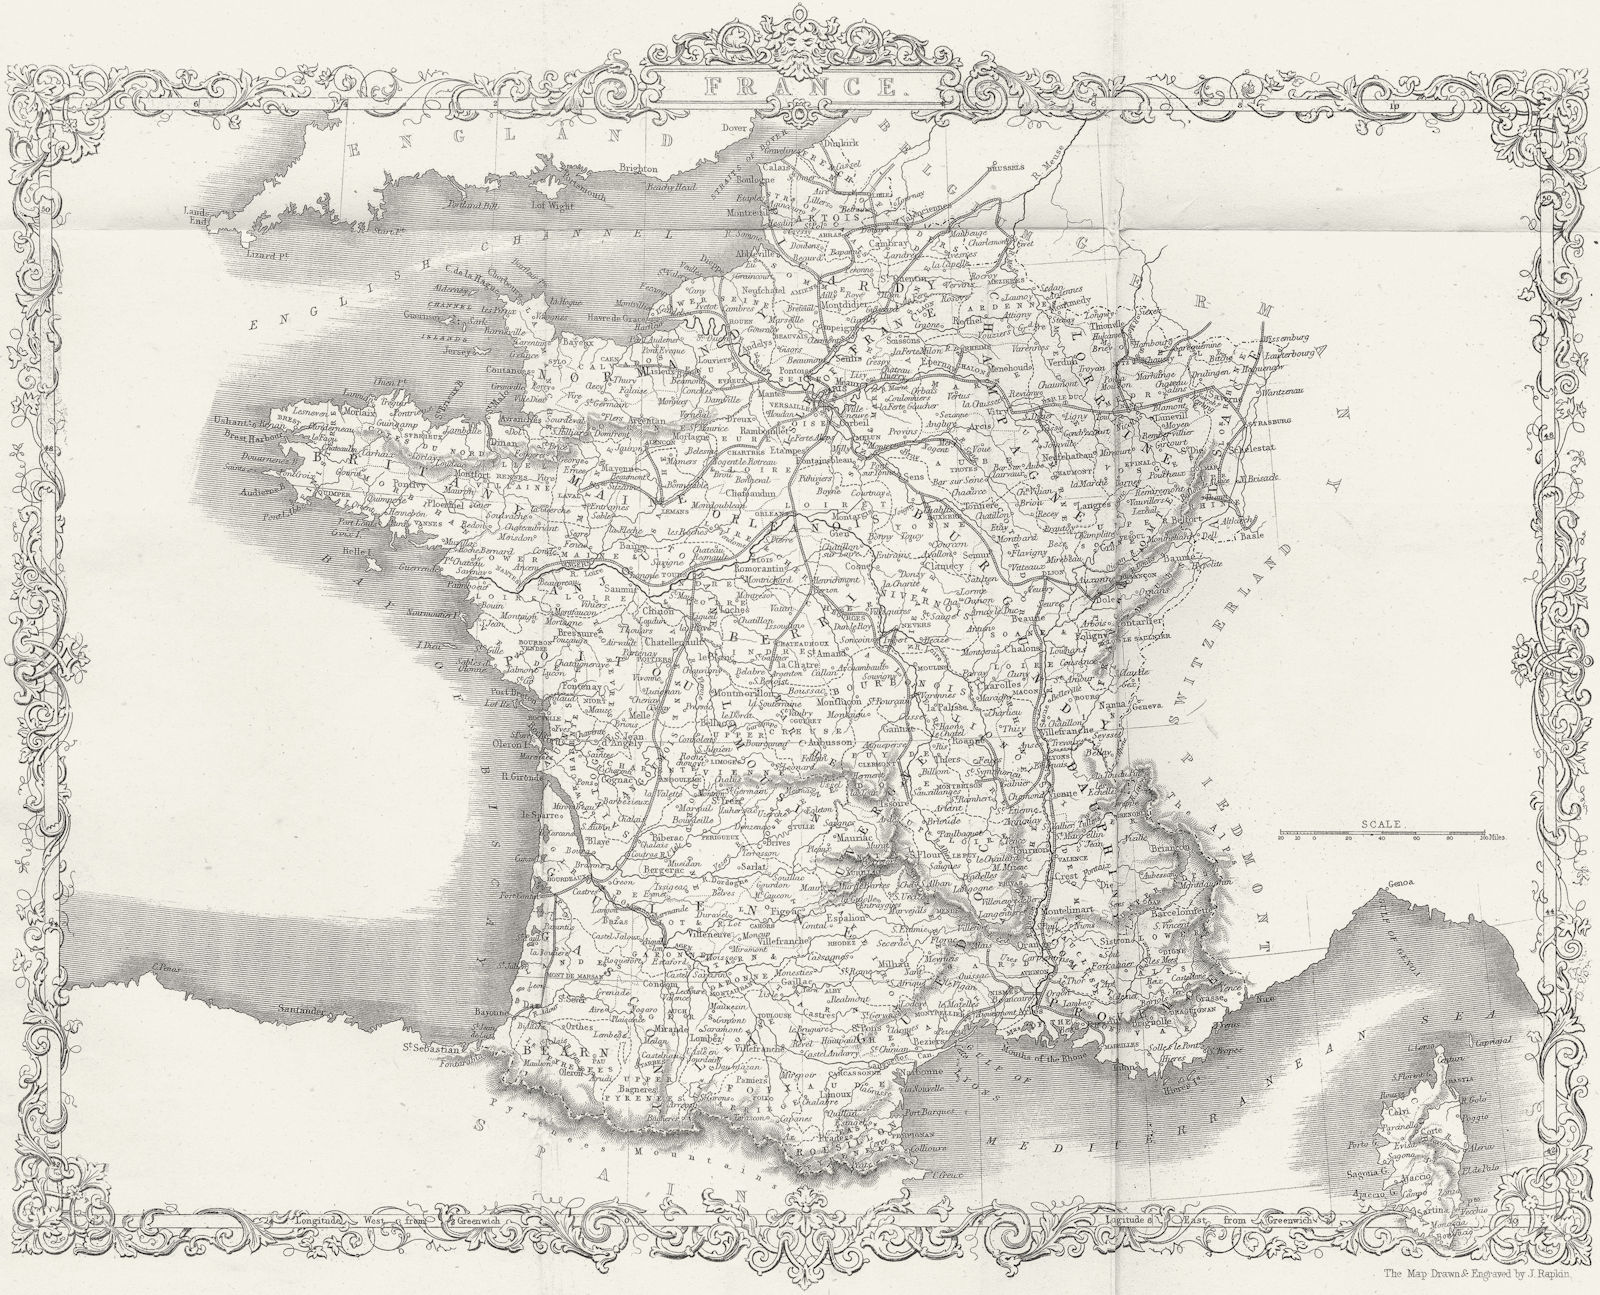 FRANCE. Rapkin Slightly 1850 old antique vintage map plan chart